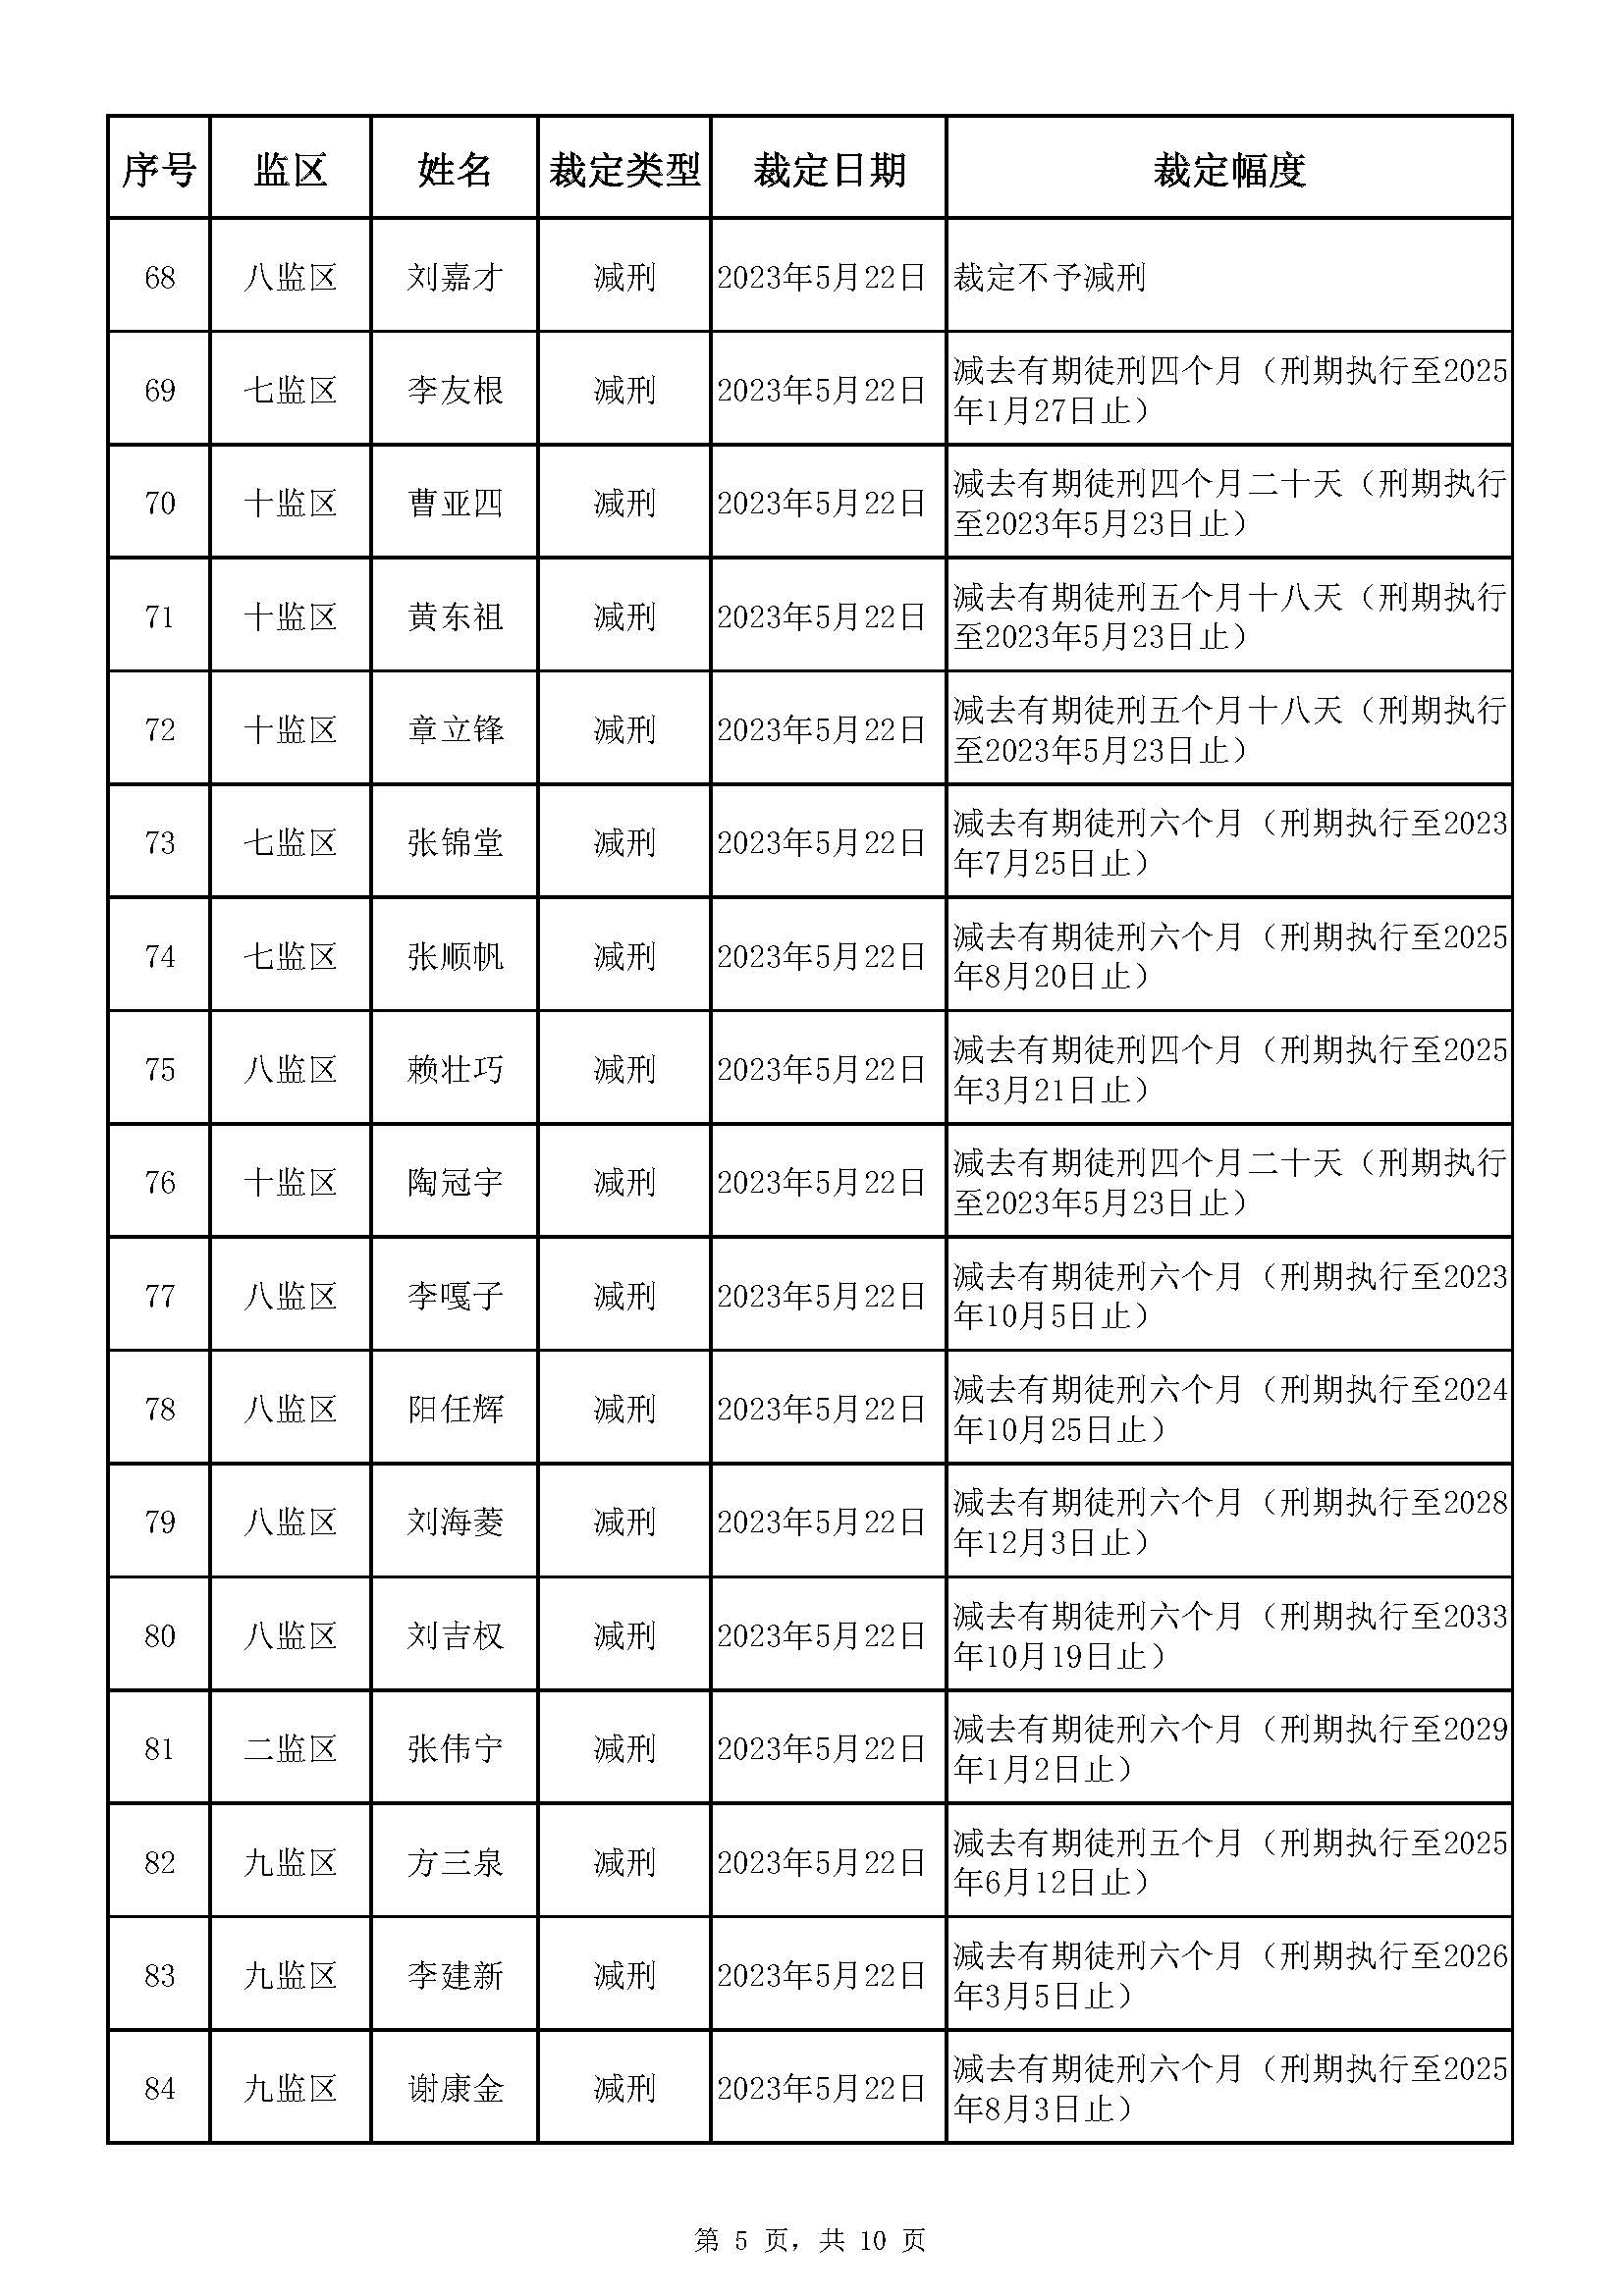 广东省明康监狱2023年第一批减刑假释裁定榜_页面_05.jpg